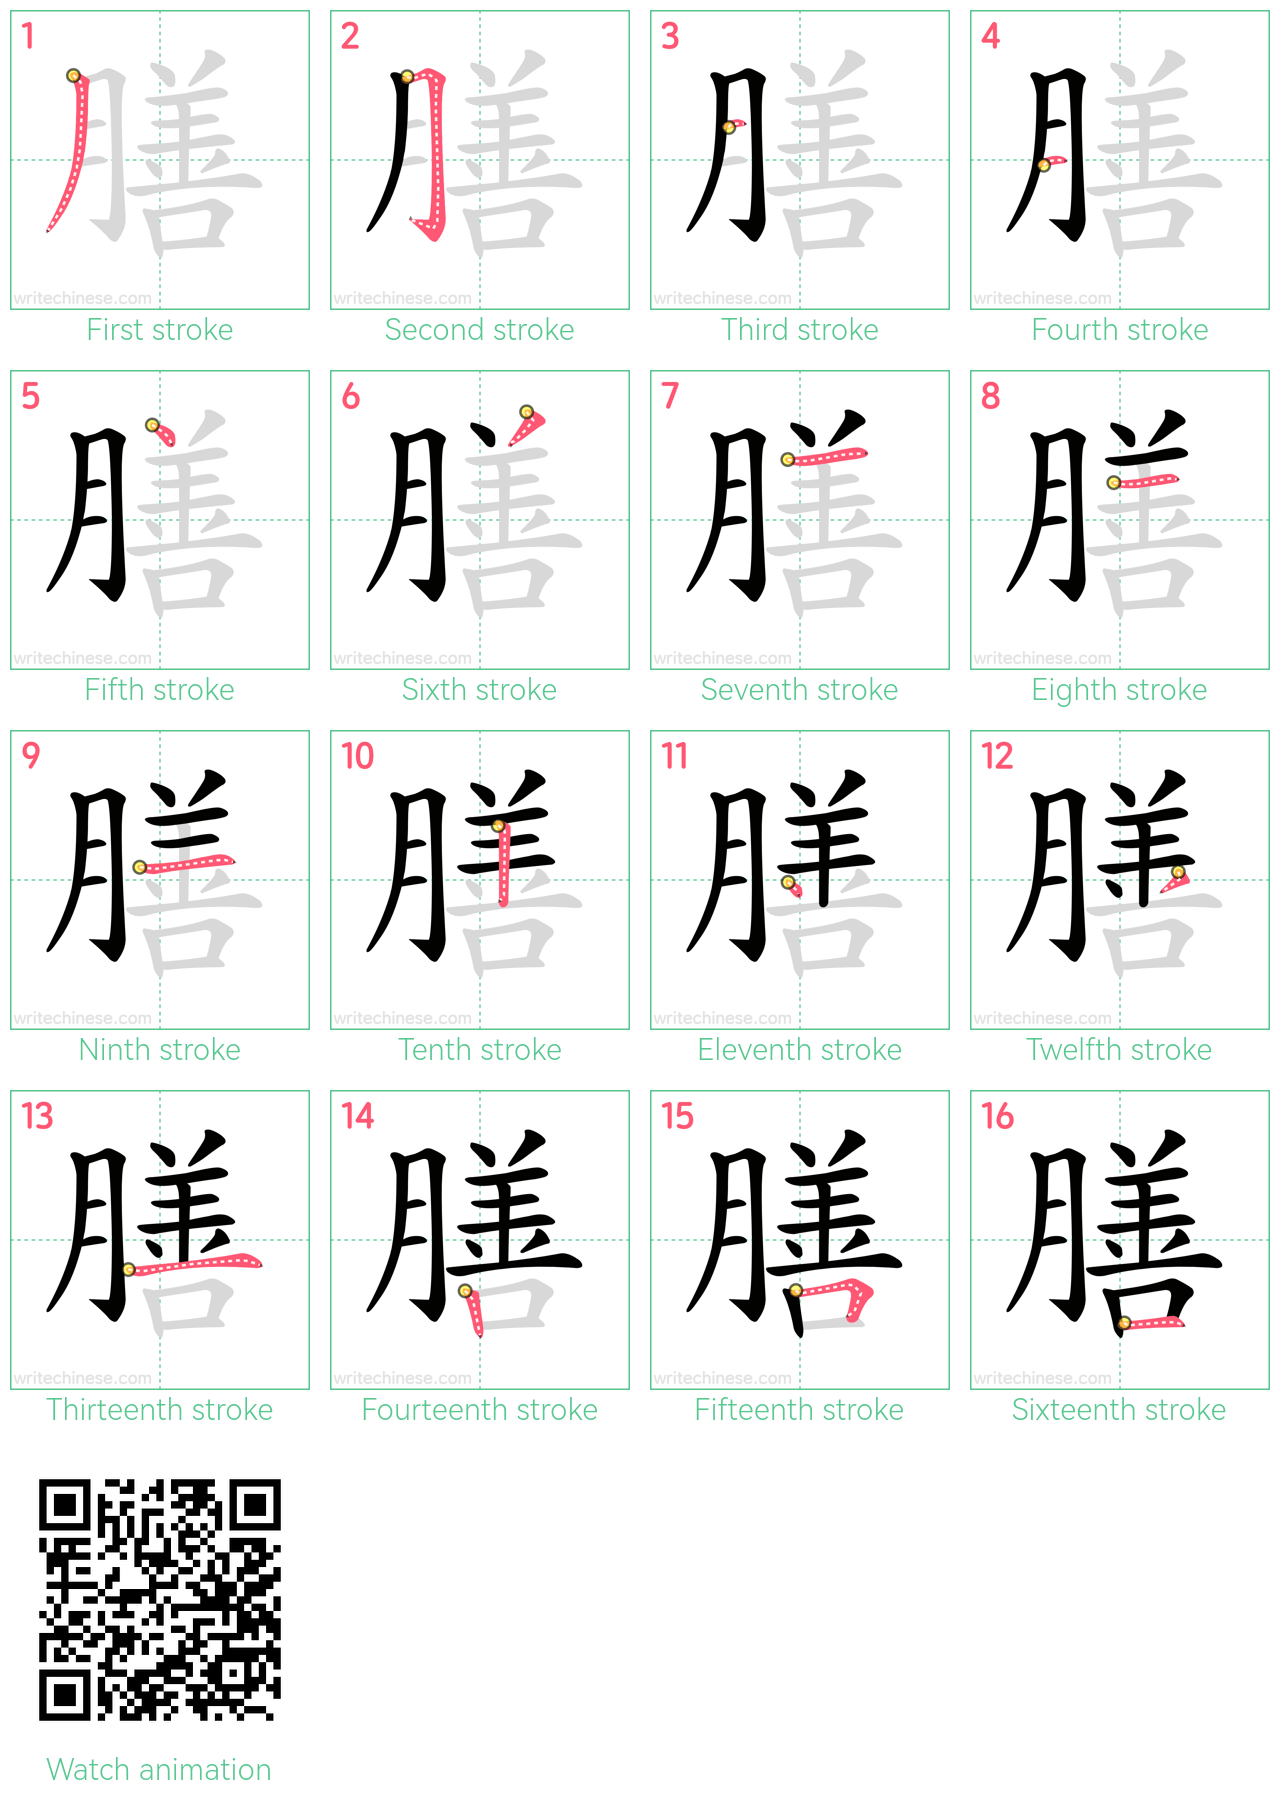 膳 step-by-step stroke order diagrams